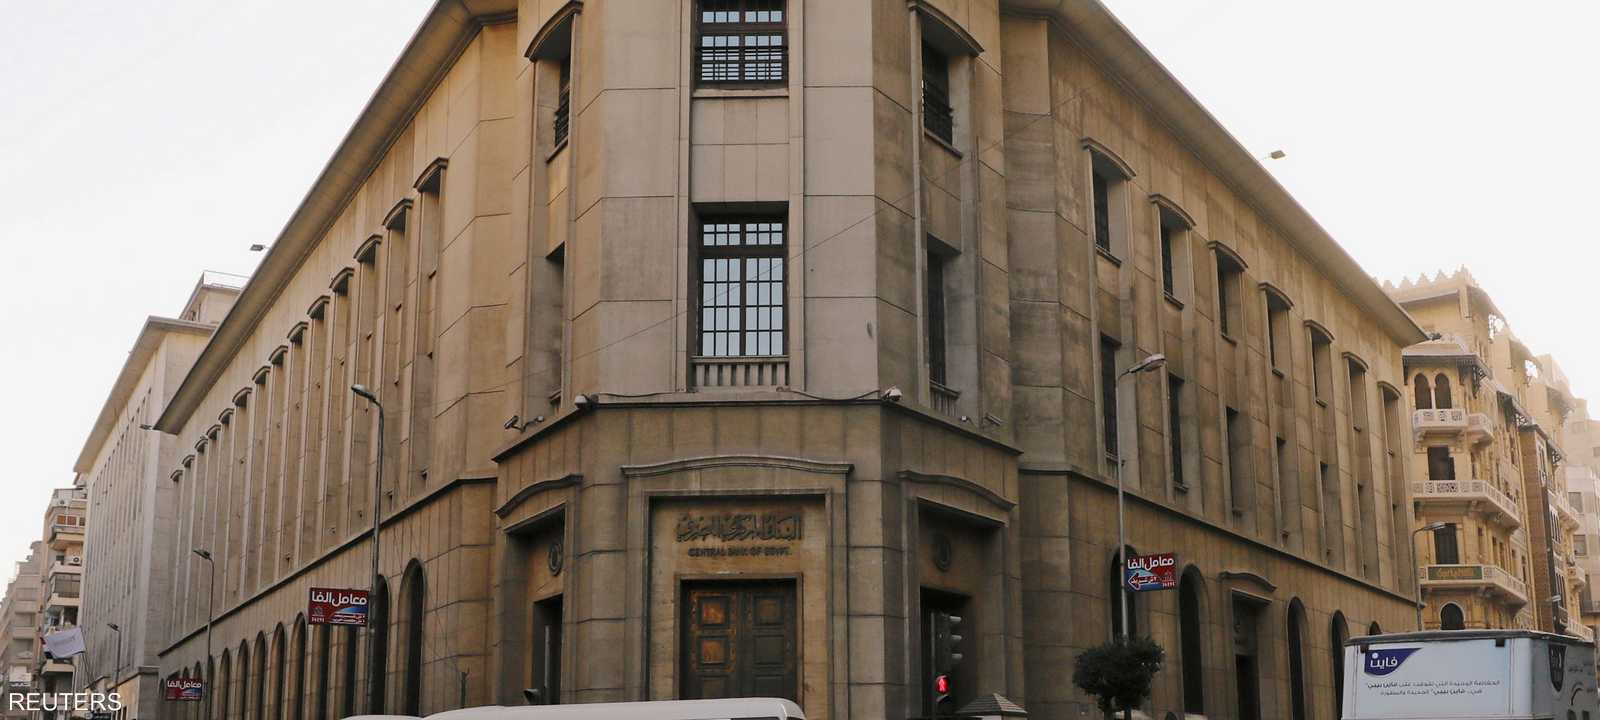 البنك المركزي المصري في لقطة أرشيفية